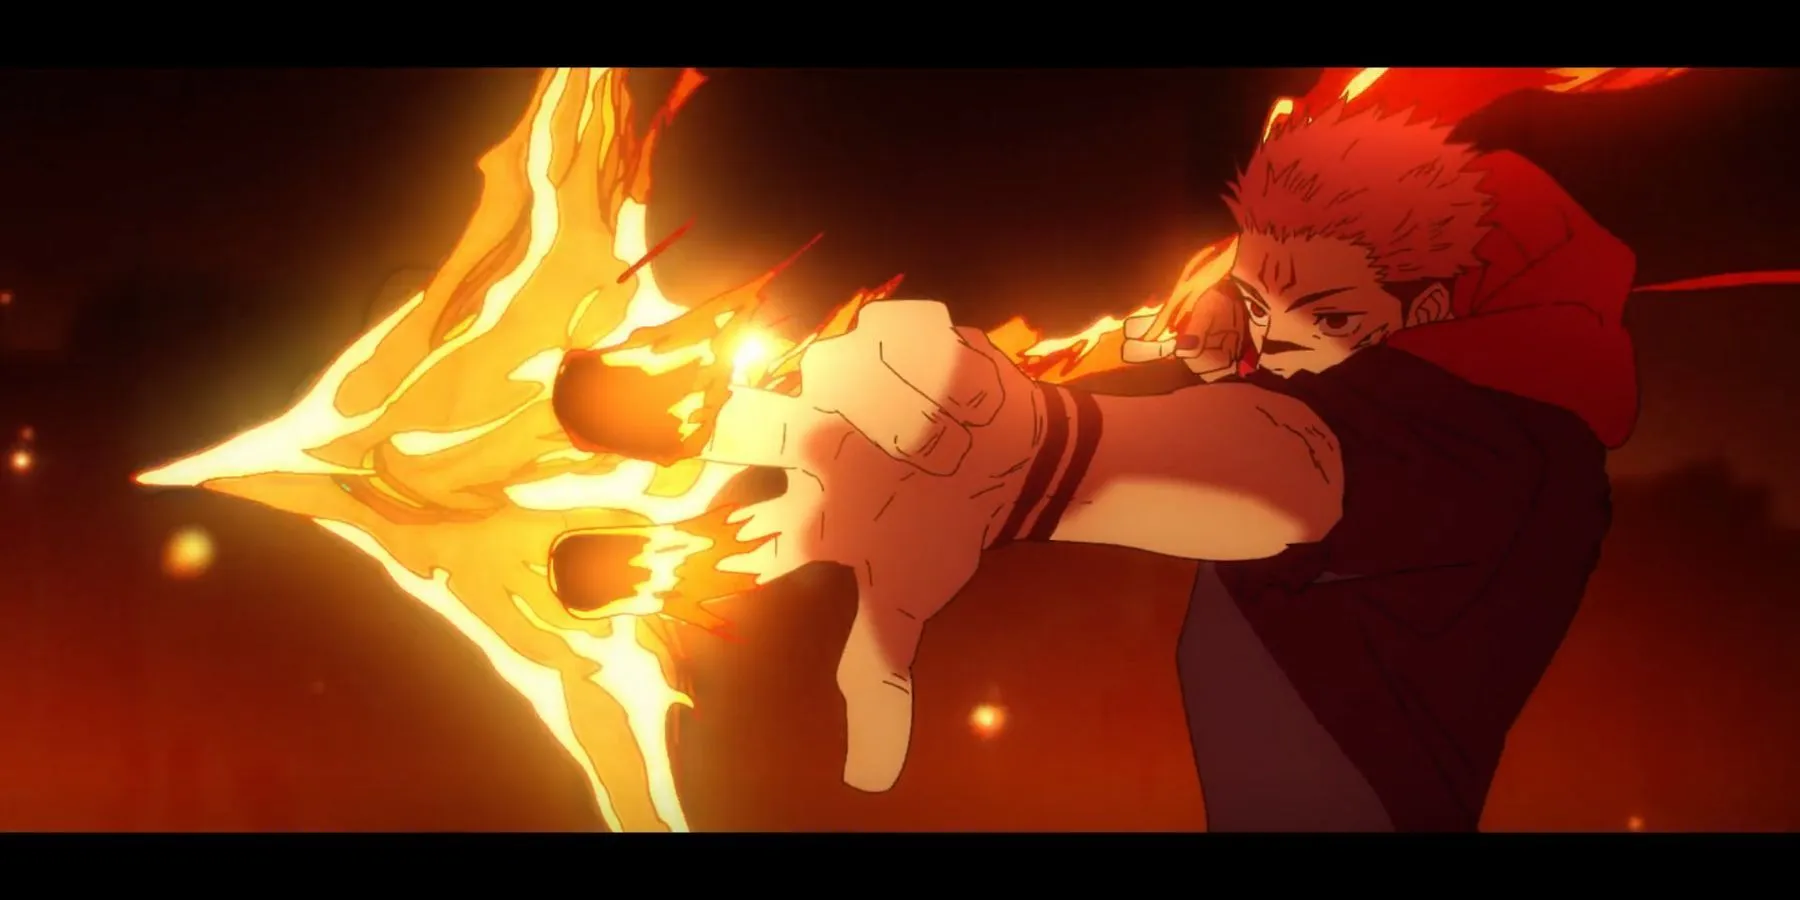 Brucia il fuoco con il fuoco Jujutsu kaisen episodio 40